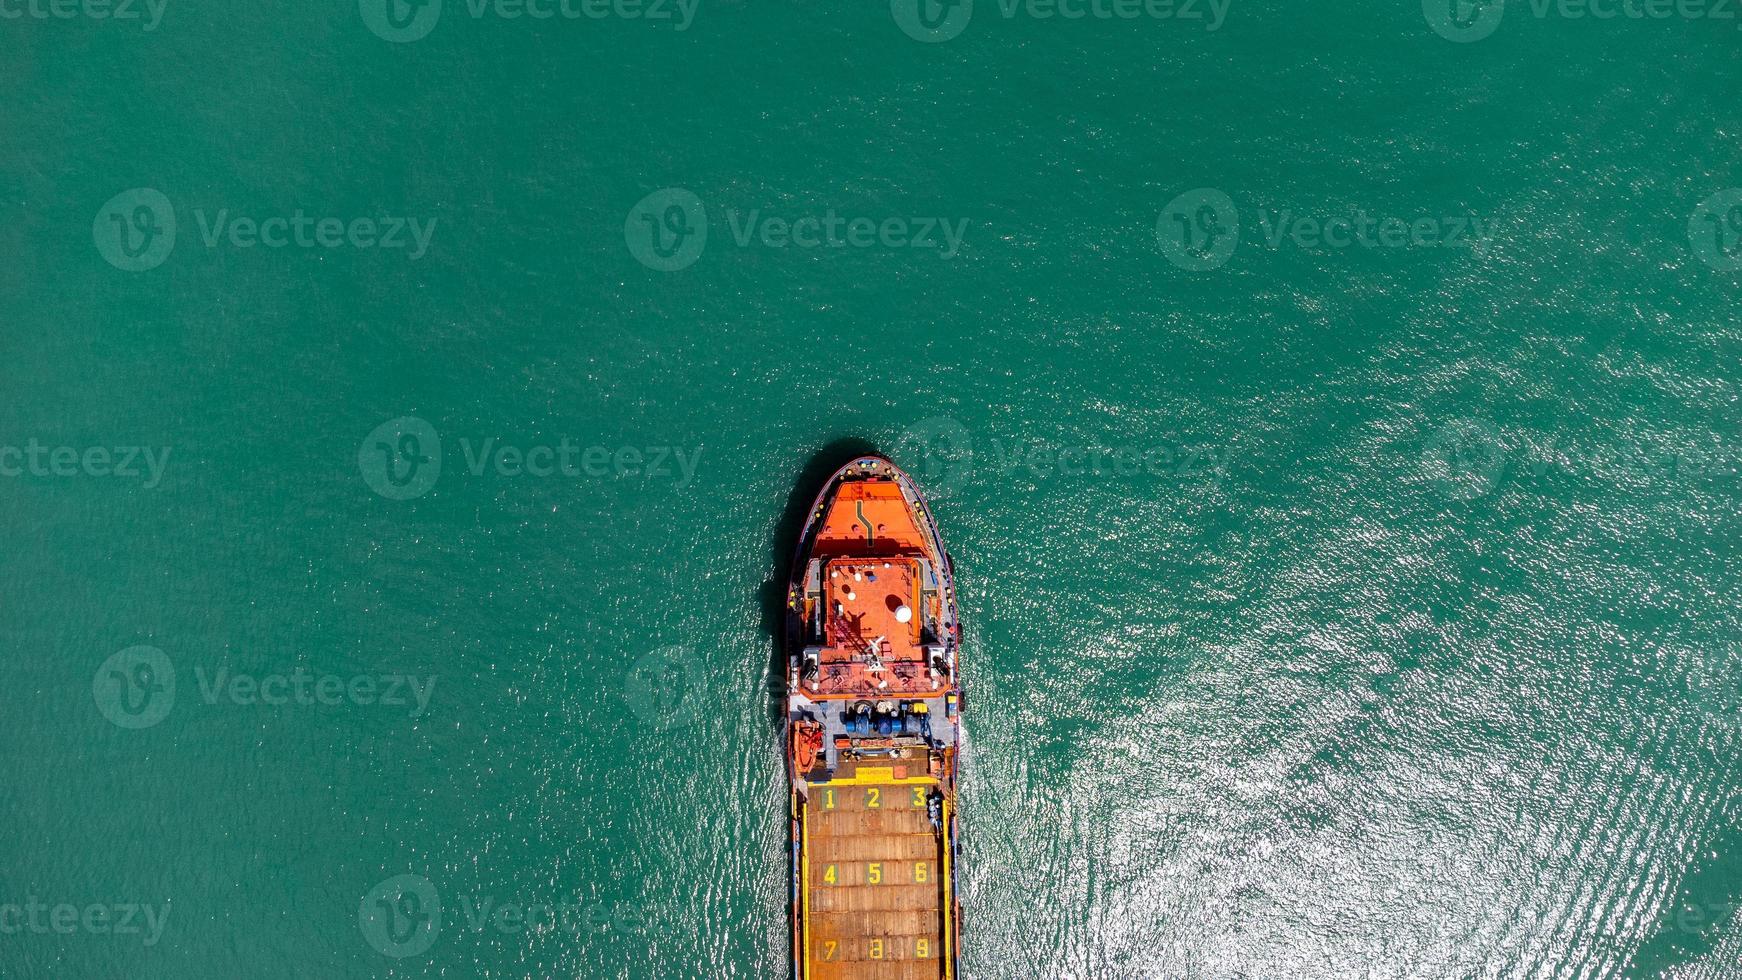 luchtfoto op de top van een vrachtschip met container en rennend voor export vrachtwerfhaven naar internationale aangepaste oceaan. concept van technologietransport, inklaring, webinarbanner. foto